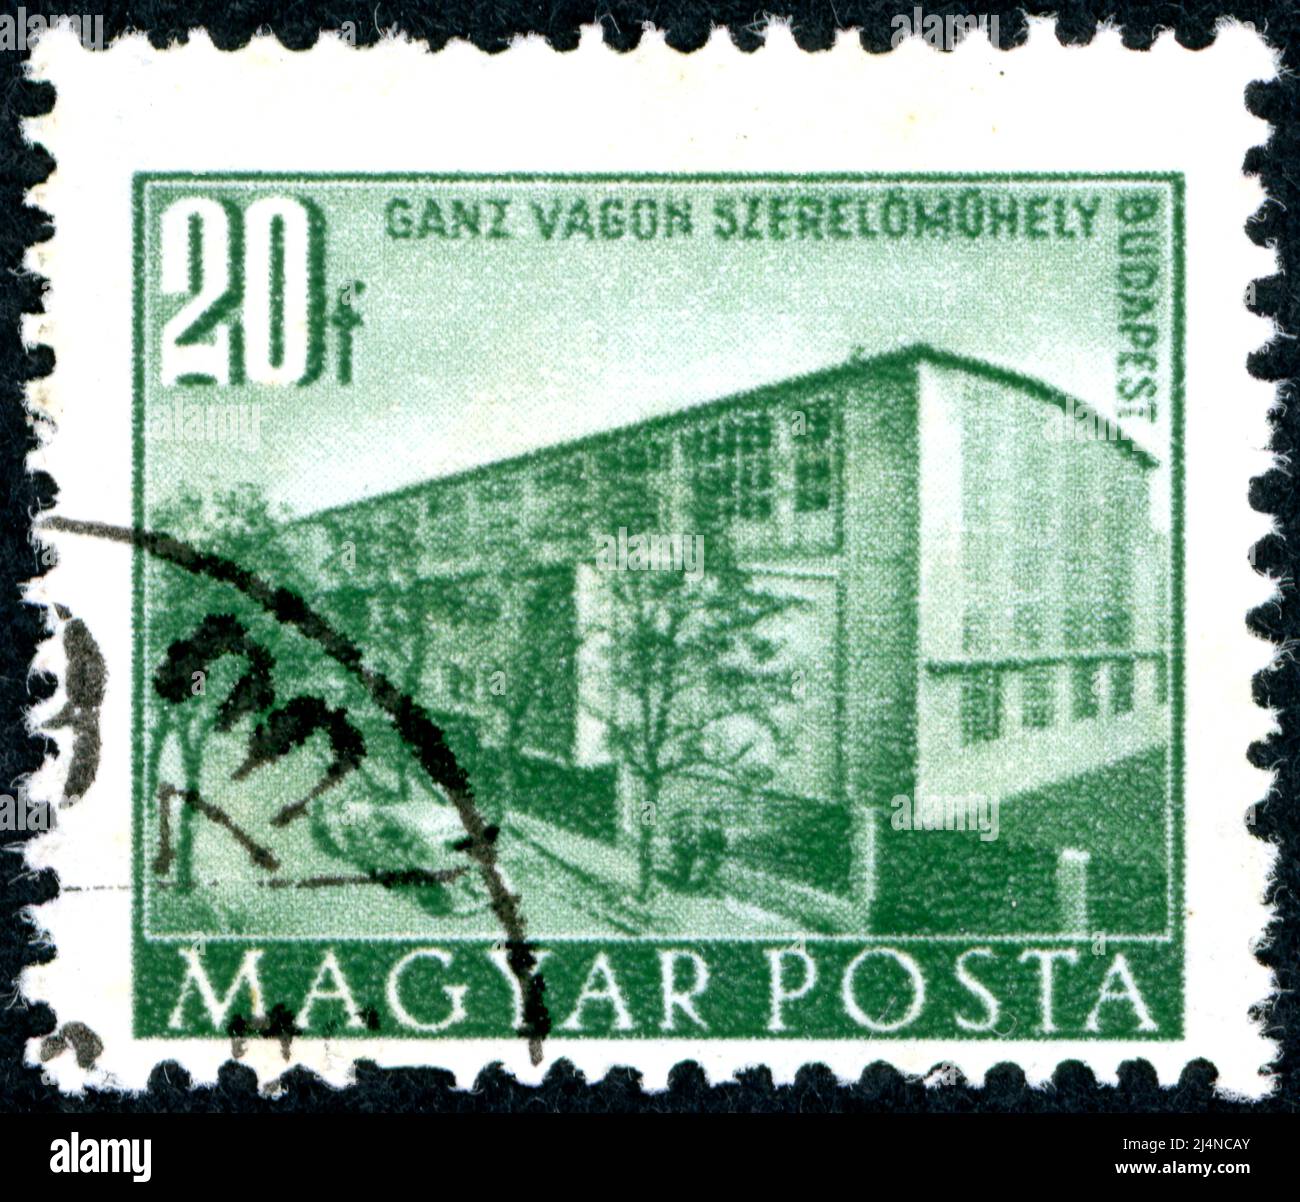 HONGRIE - VERS 1951 : timbre imprimé en Hongrie, représentation d'un atelier ferroviaire, Budapest, vers 1951 Banque D'Images